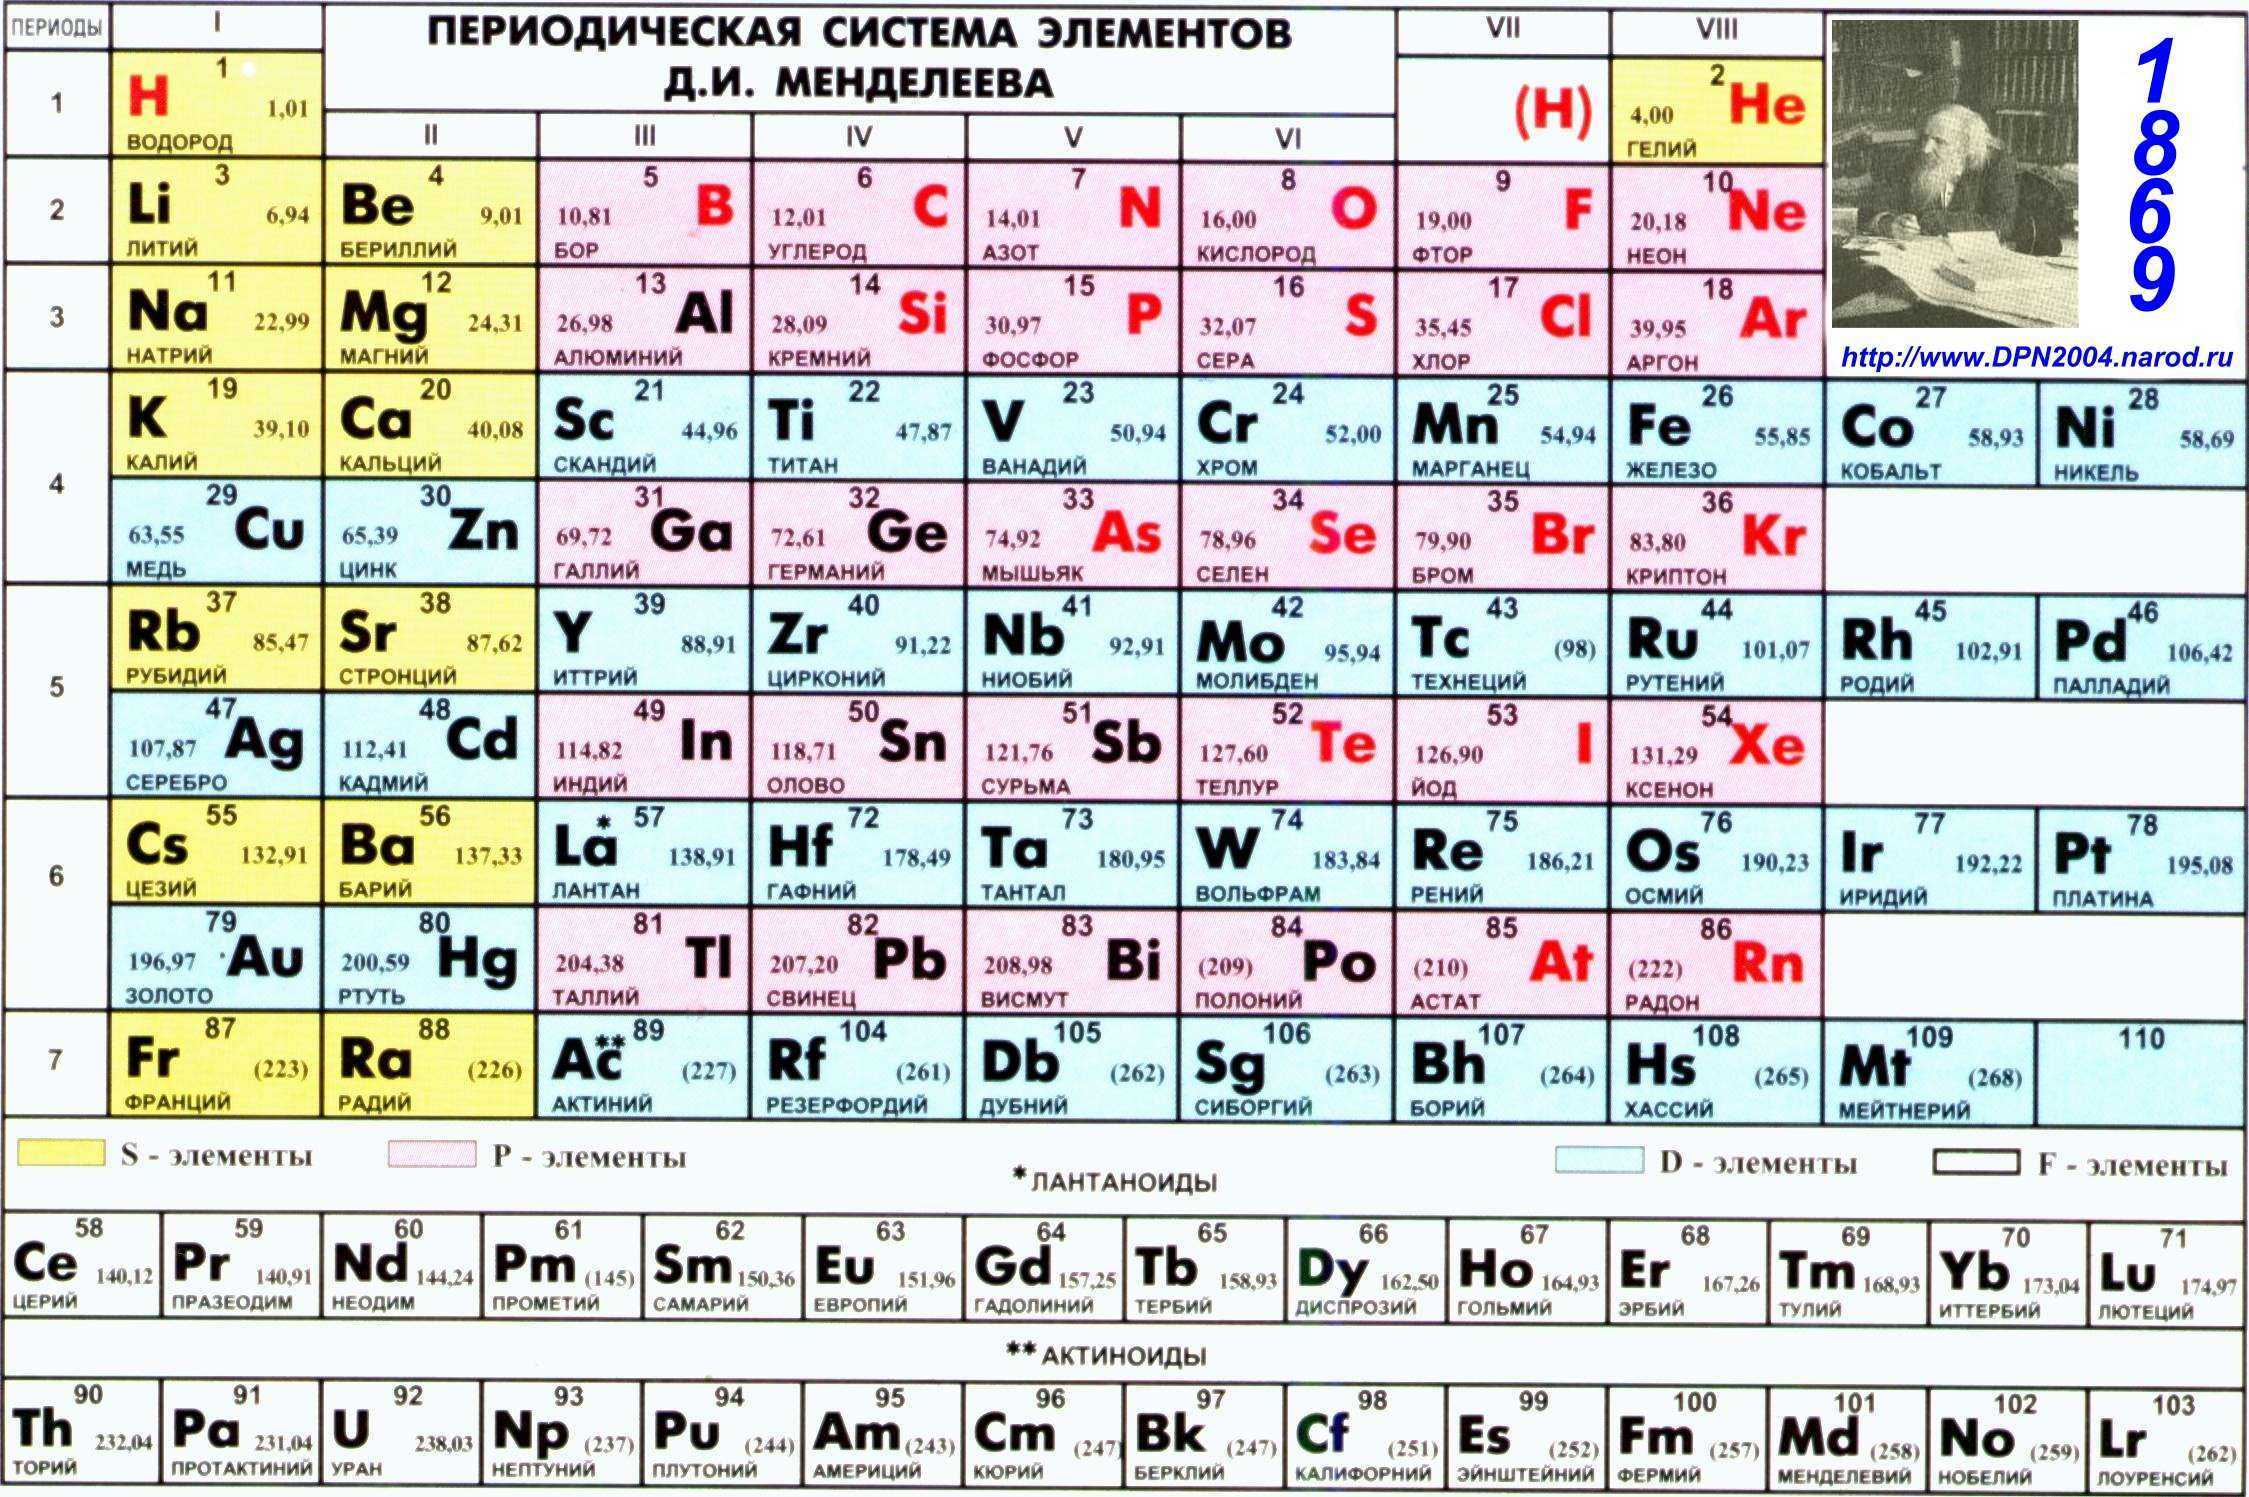 C название элемента. Периодическая таблица Менделеева. Показать периодическую таблицу Менделеева. Первые 20 элементов таблицы Менделеева.